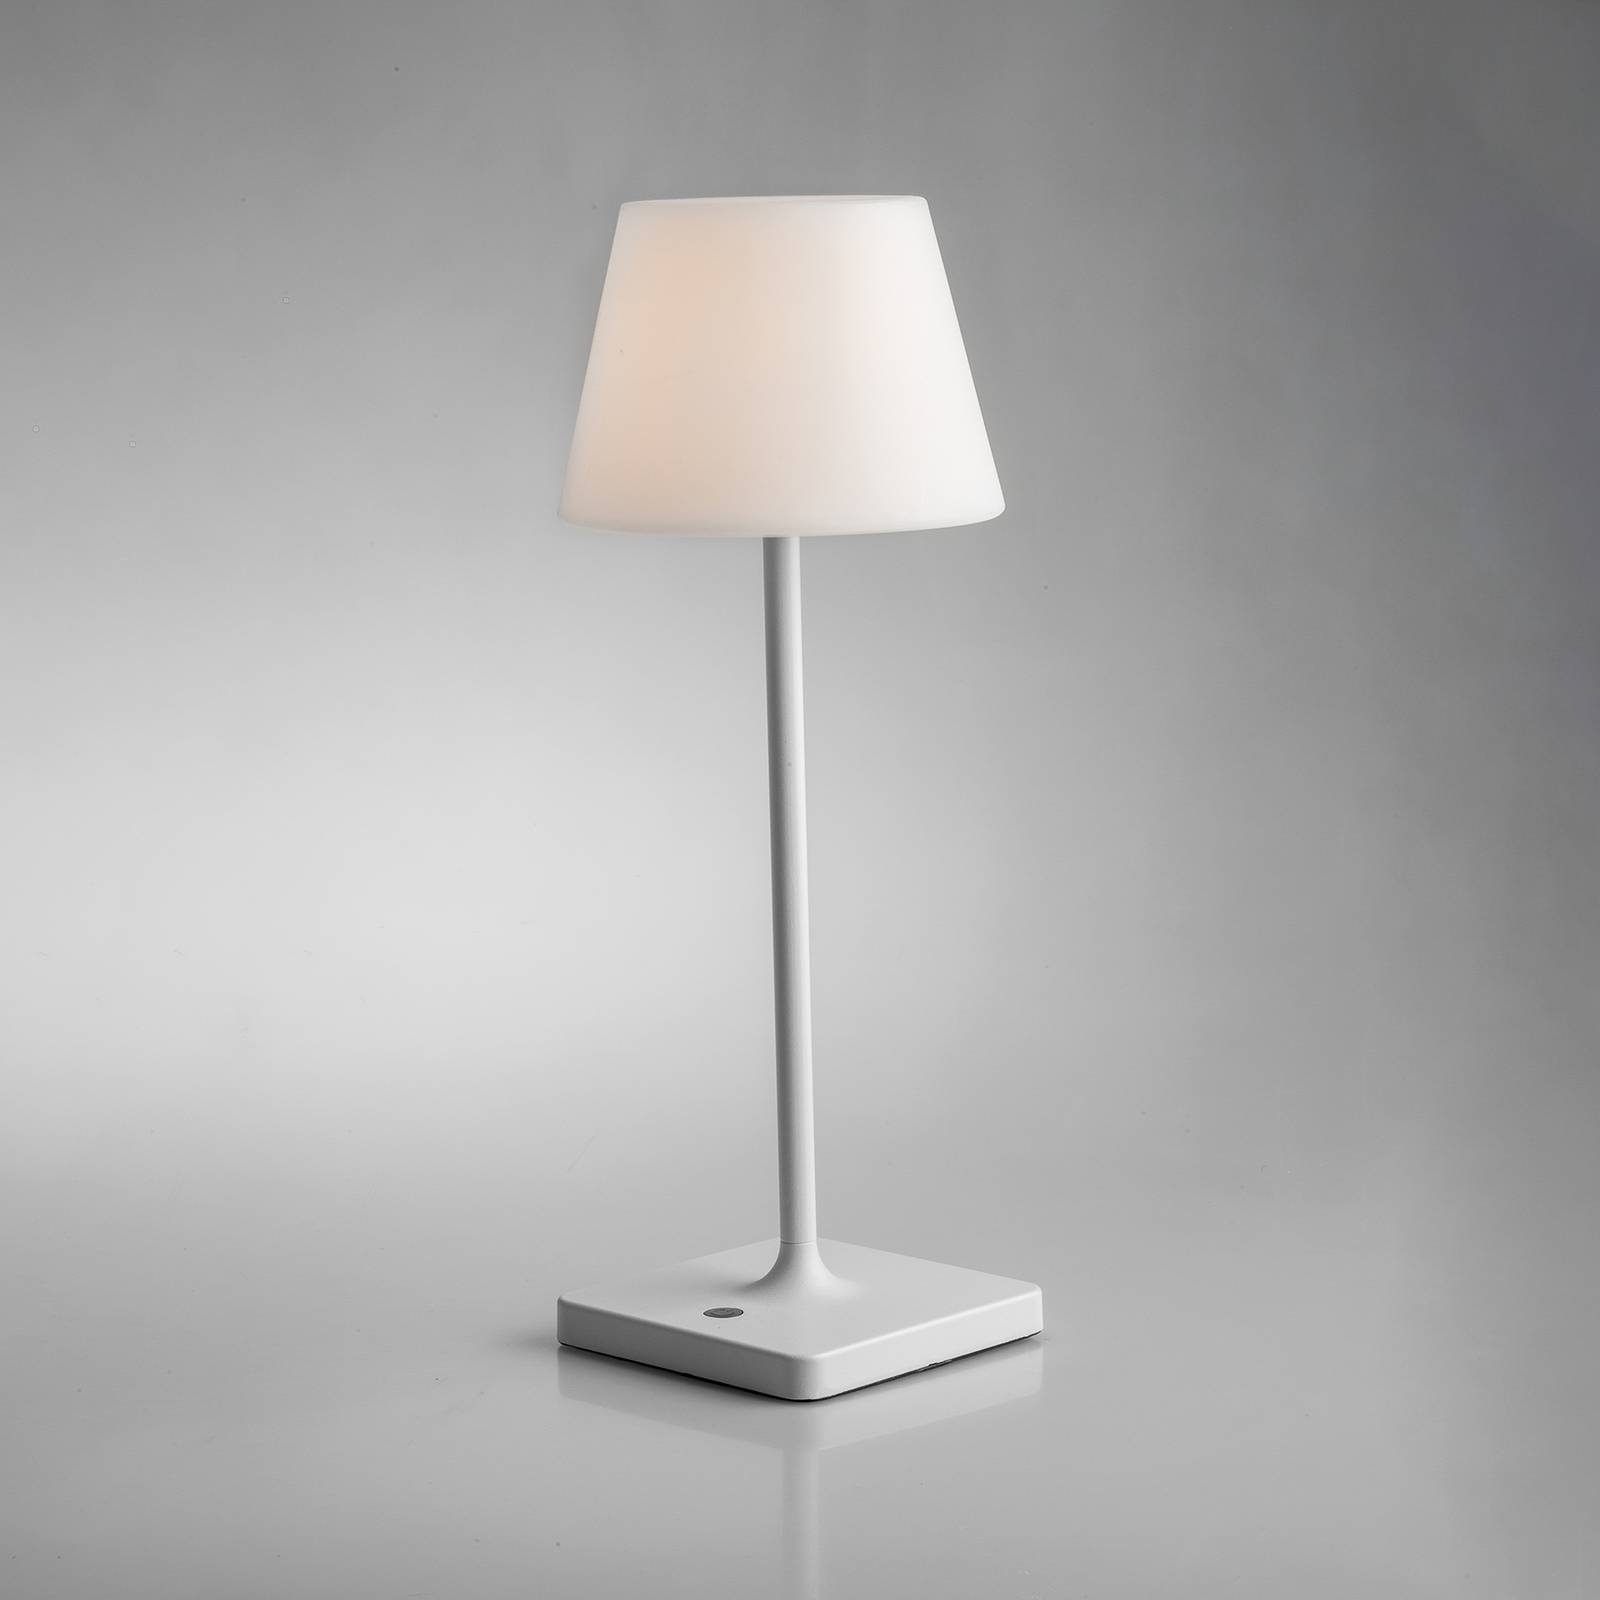 Eco-light led akkus asztali lámpa jammin, dimm, fehér